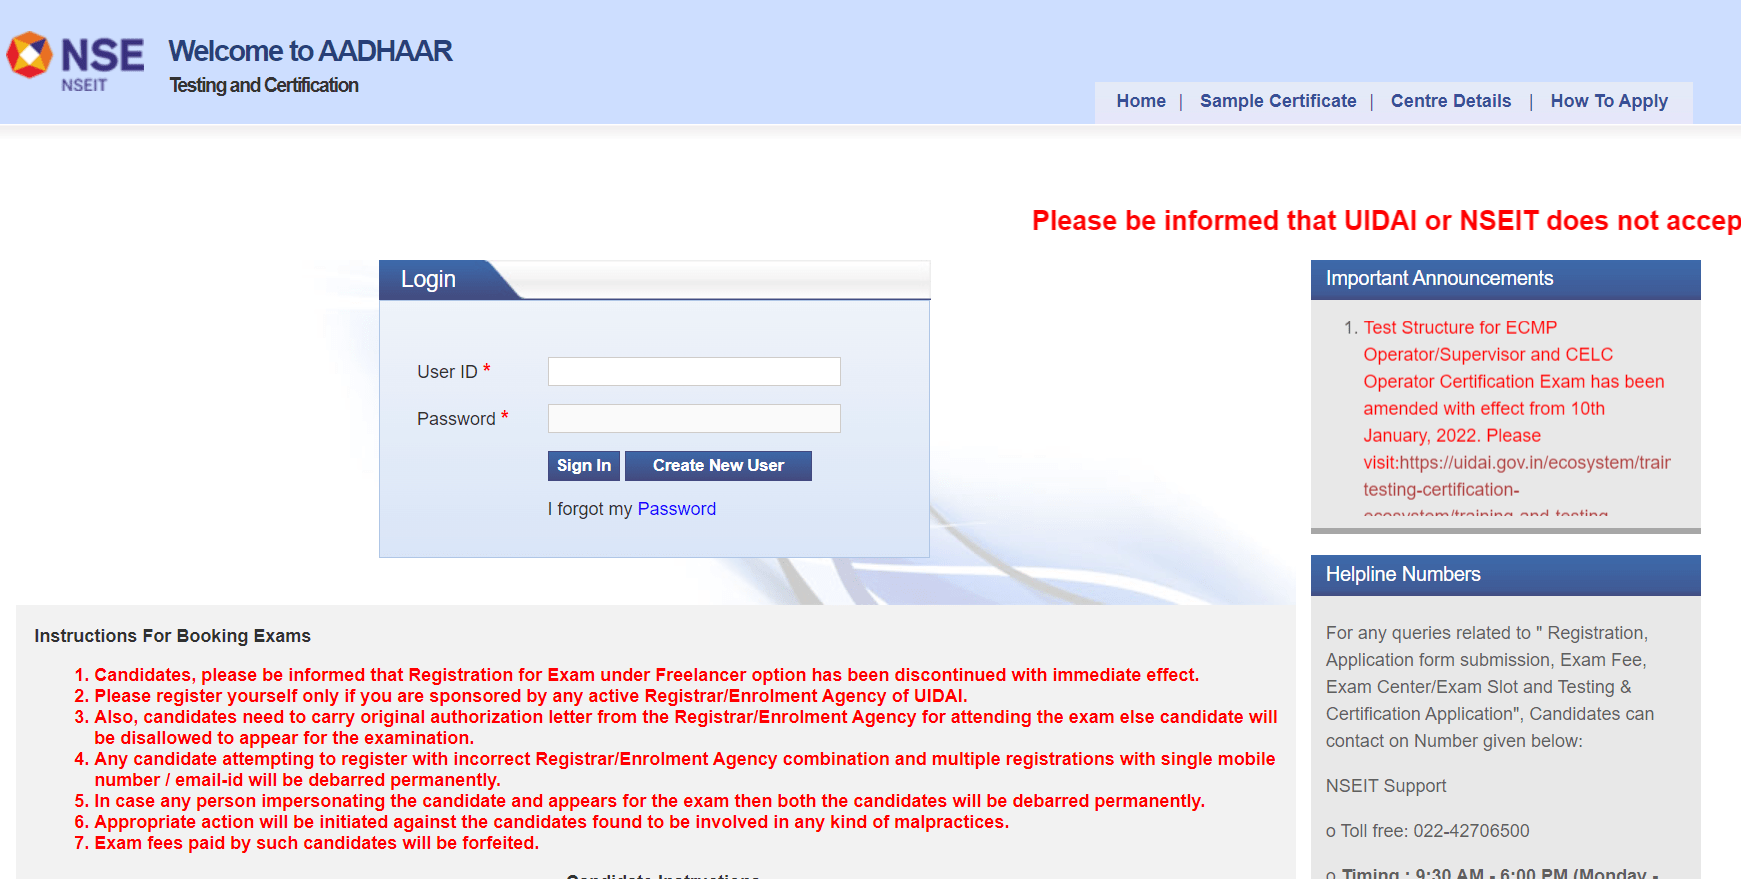 Aadhaar Operator Certificate Online 2023